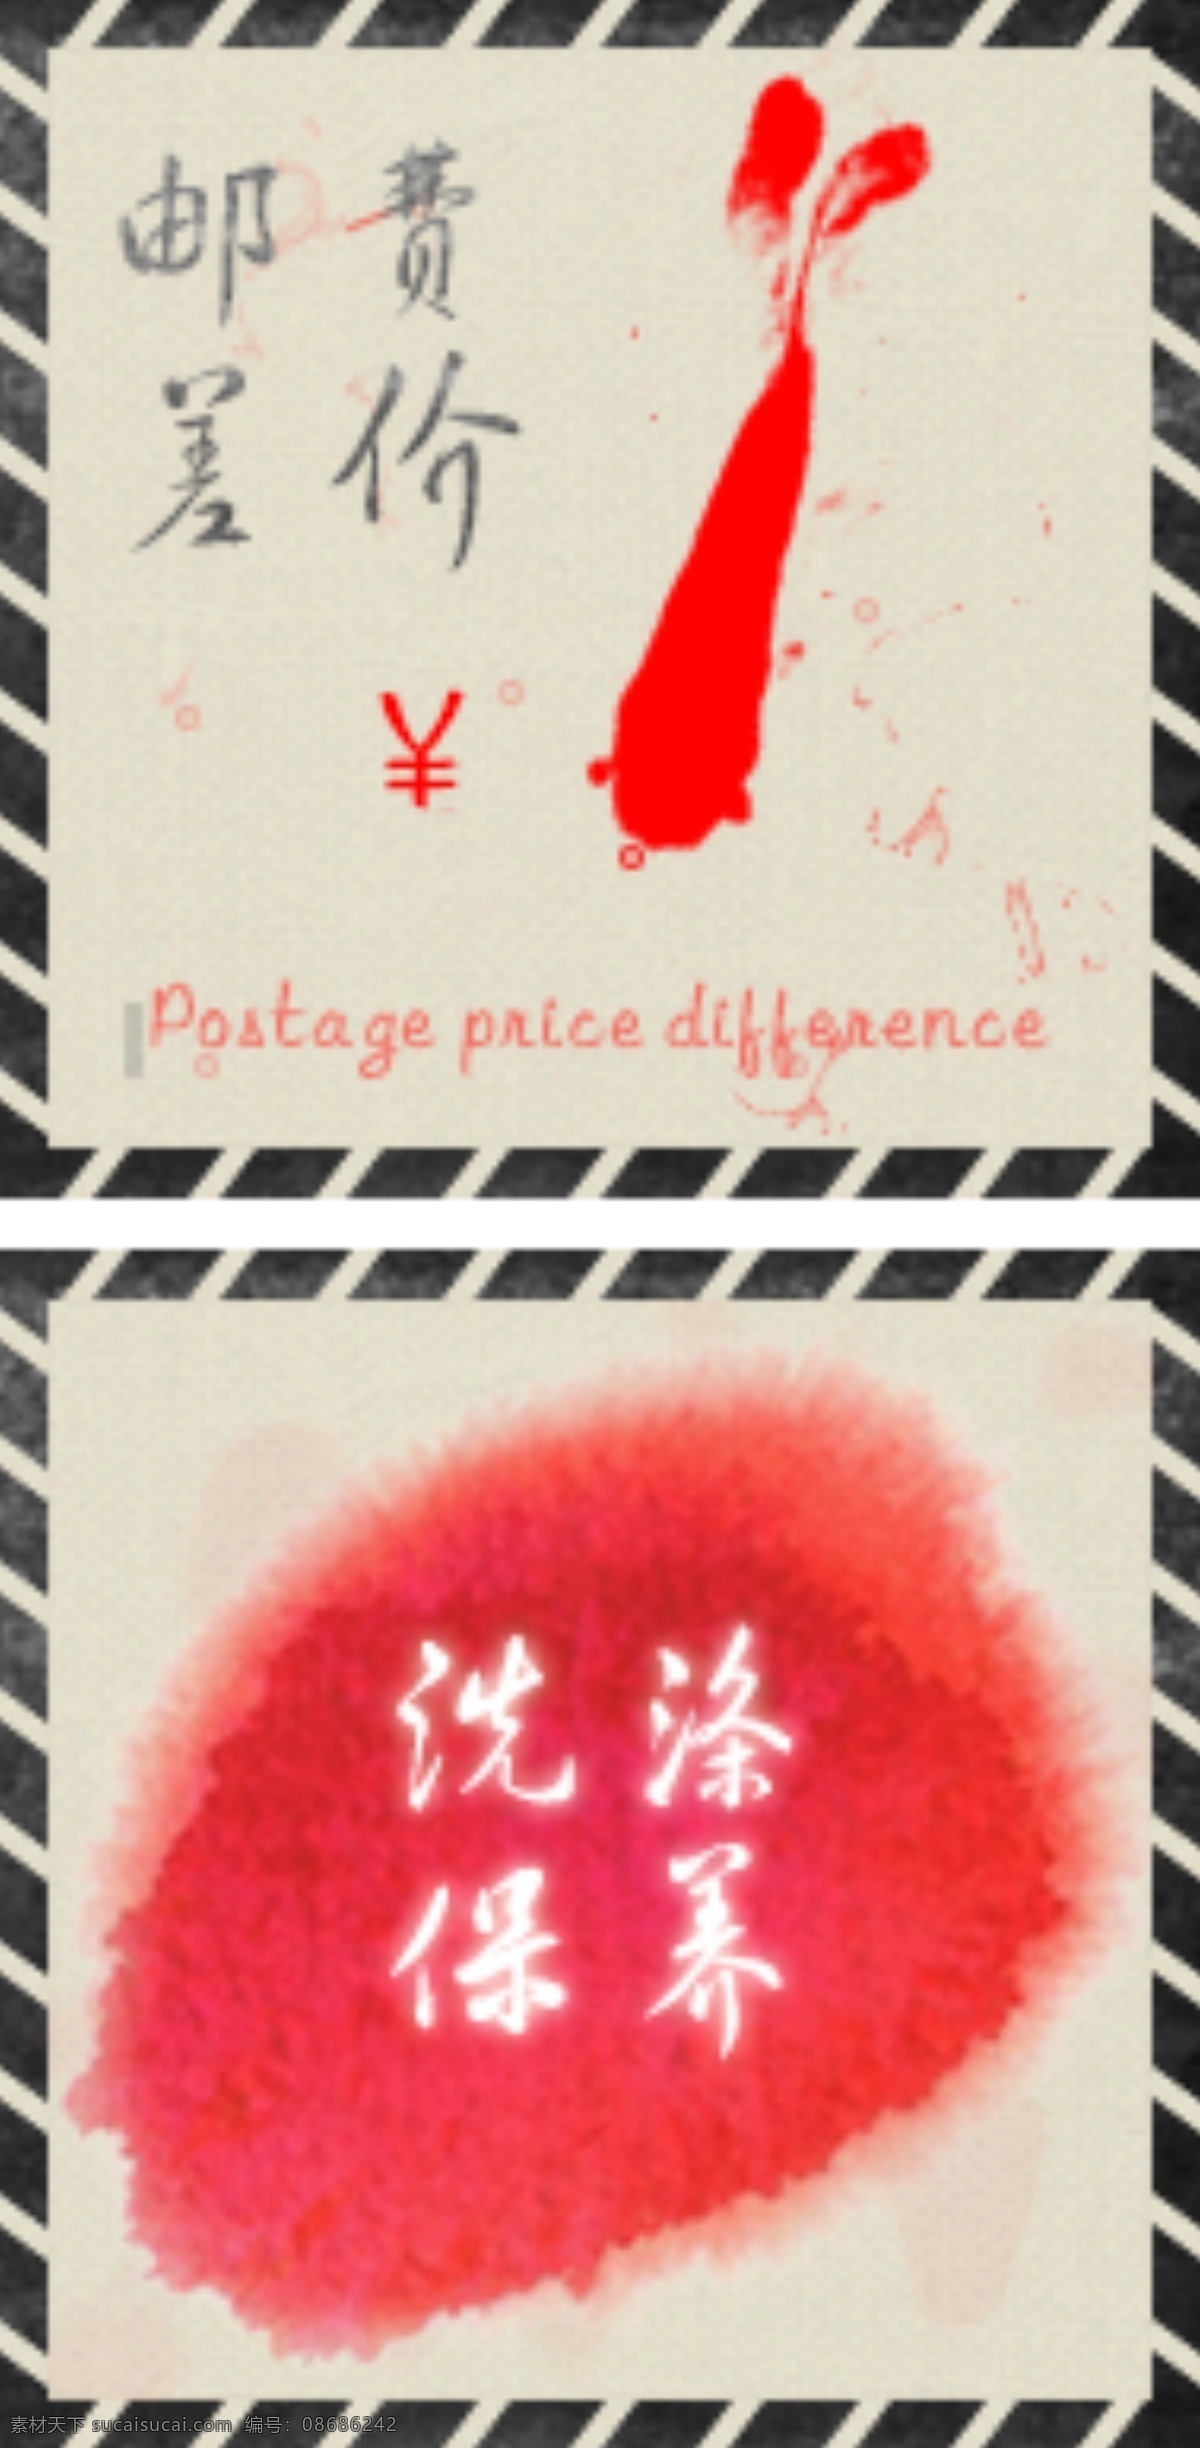 中国 风 天猫 淘宝 侧边 装修 邮费 补差 像素 px 价 红色 水墨 原创设计 原创淘宝设计